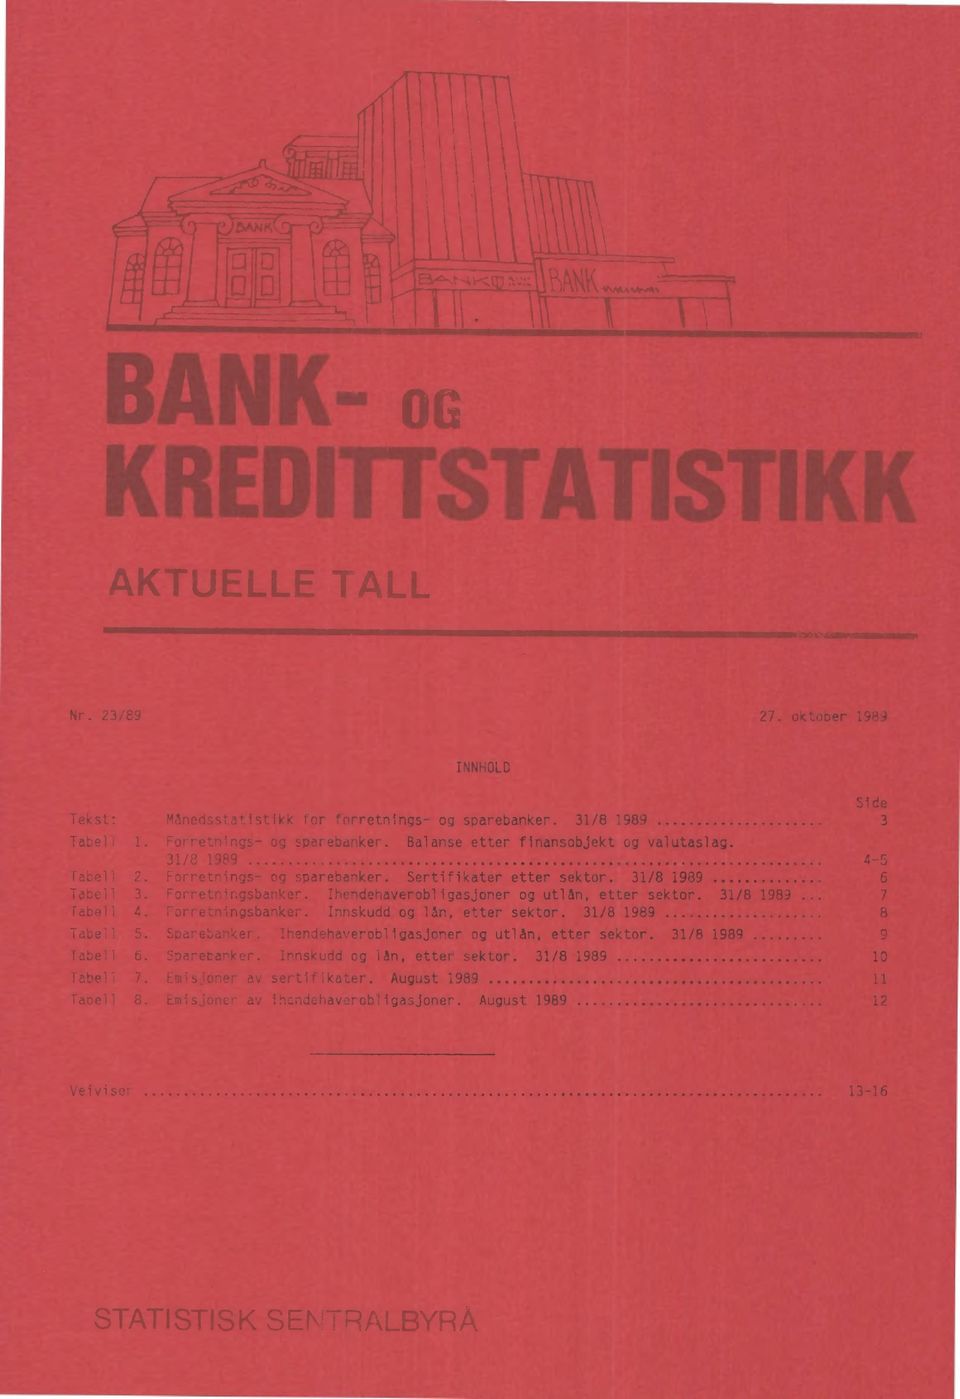 Ihendehaverobligasjoner og utlån, etter sektor. 31/8 1989 7 fabell 4. Forretningsbanker. Innskudd og lån, etter sektor. 31/8 1989 8 Tabell 5. Sparebanker.